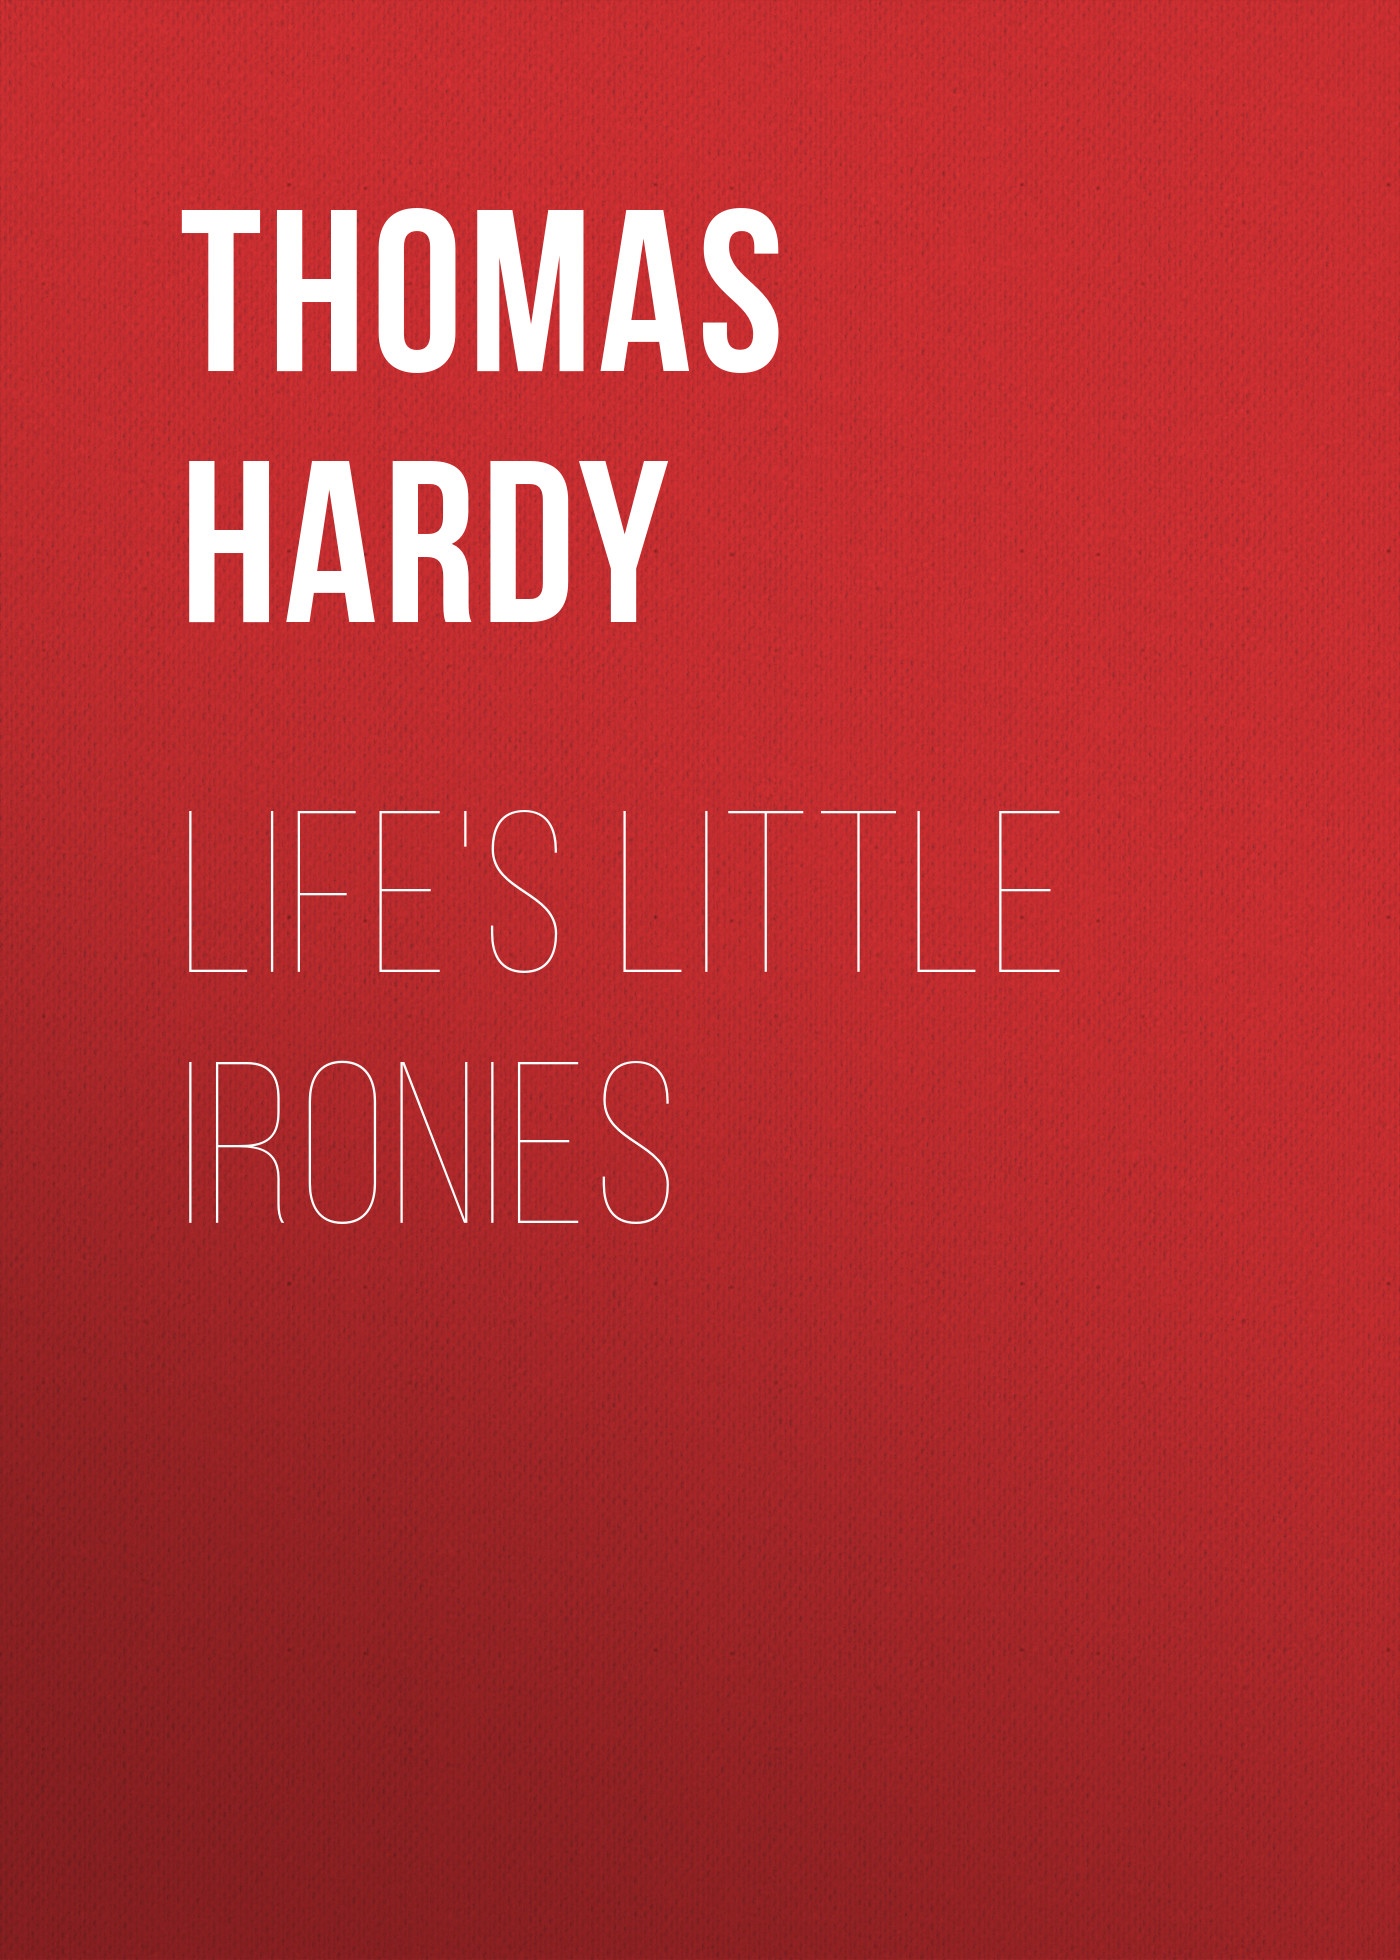 Книга Life's Little Ironies из серии , созданная Thomas Hardy, может относится к жанру Зарубежная старинная литература, Зарубежная классика. Стоимость электронной книги Life's Little Ironies с идентификатором 25202287 составляет 0 руб.